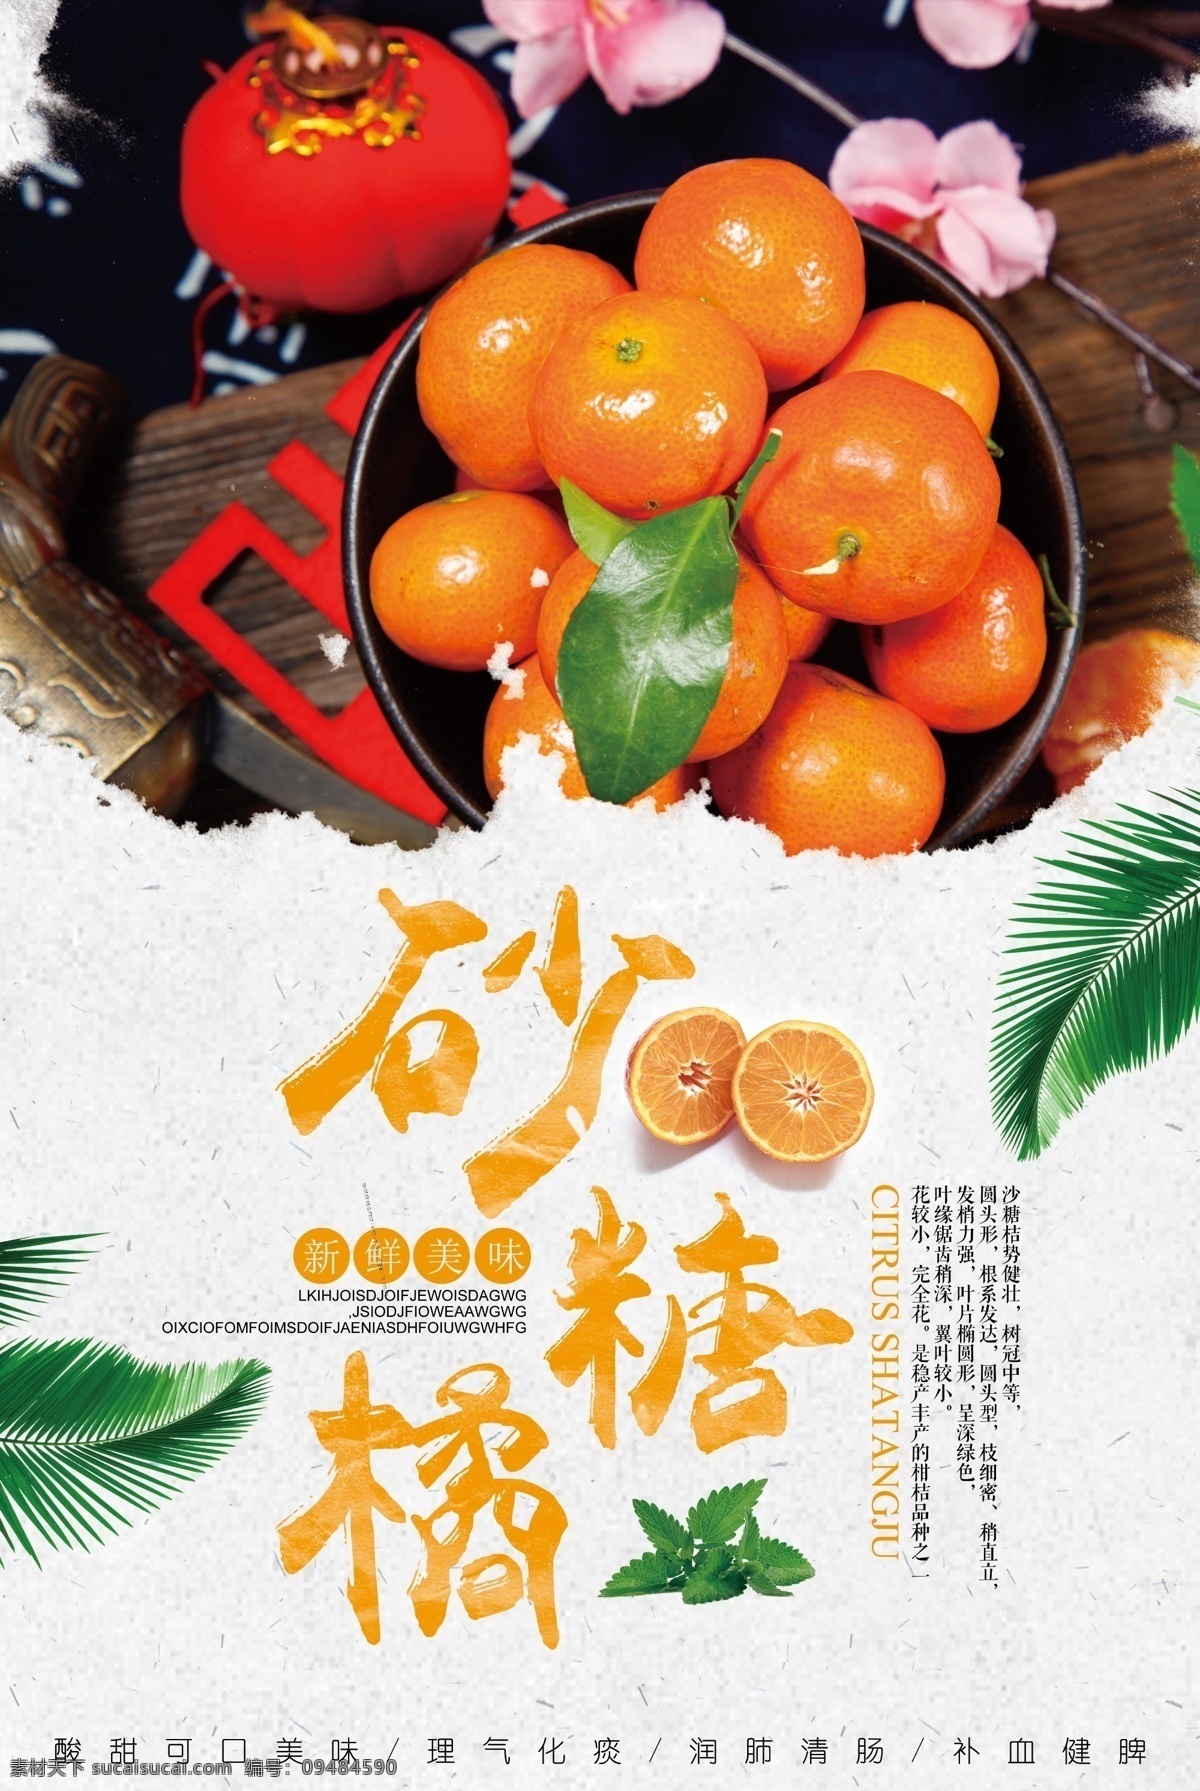 2018 简约 风格 新鲜 砂糖 橘 海报模板 新鲜水果 海报 水果 水果海报设计 大气 餐饮海报设计 清新 砂糖橘 新鲜砂糖橘 免费海报设计 简约风格